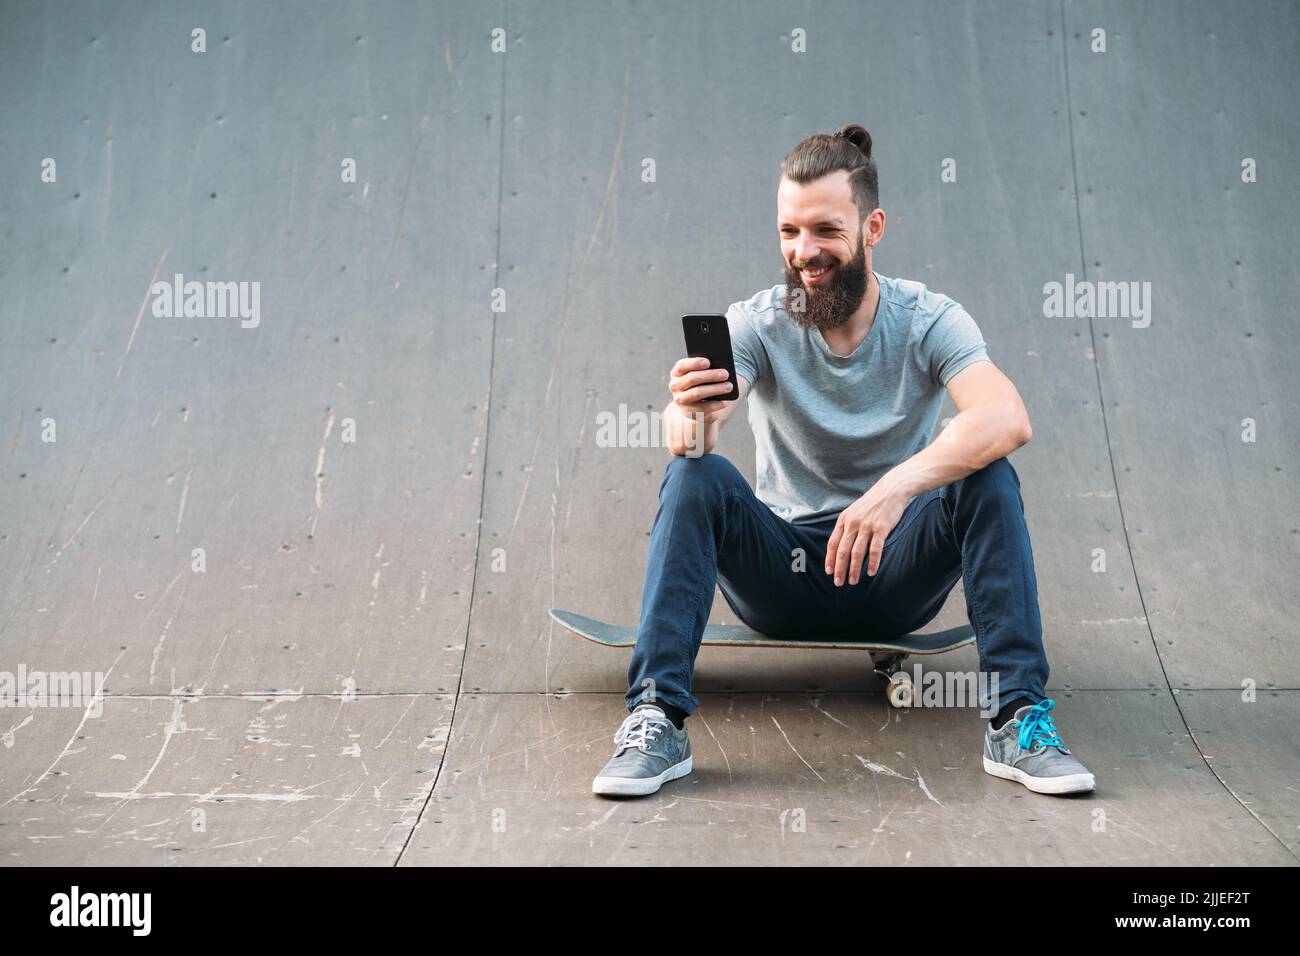 uomo urbano stile di vita hipster skateboard selfie rampa Foto Stock